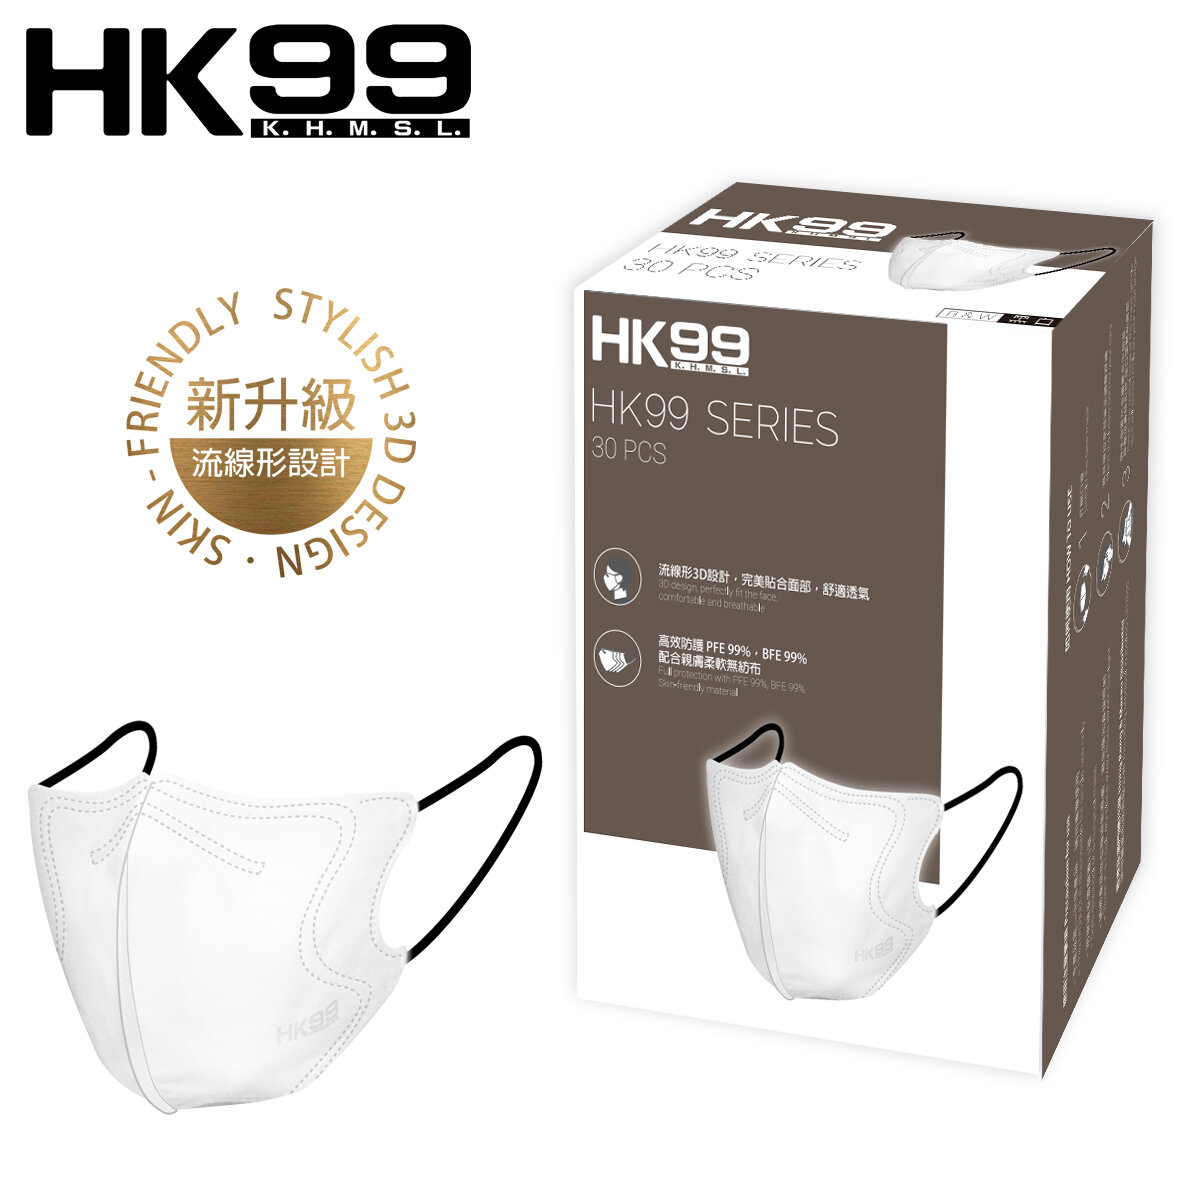 [香港製造] 新裝上市- HK99 3D成人立體口罩 (黑白色) 30片裝  (適合一般成人面型) 4層口罩 [獨特包裝]